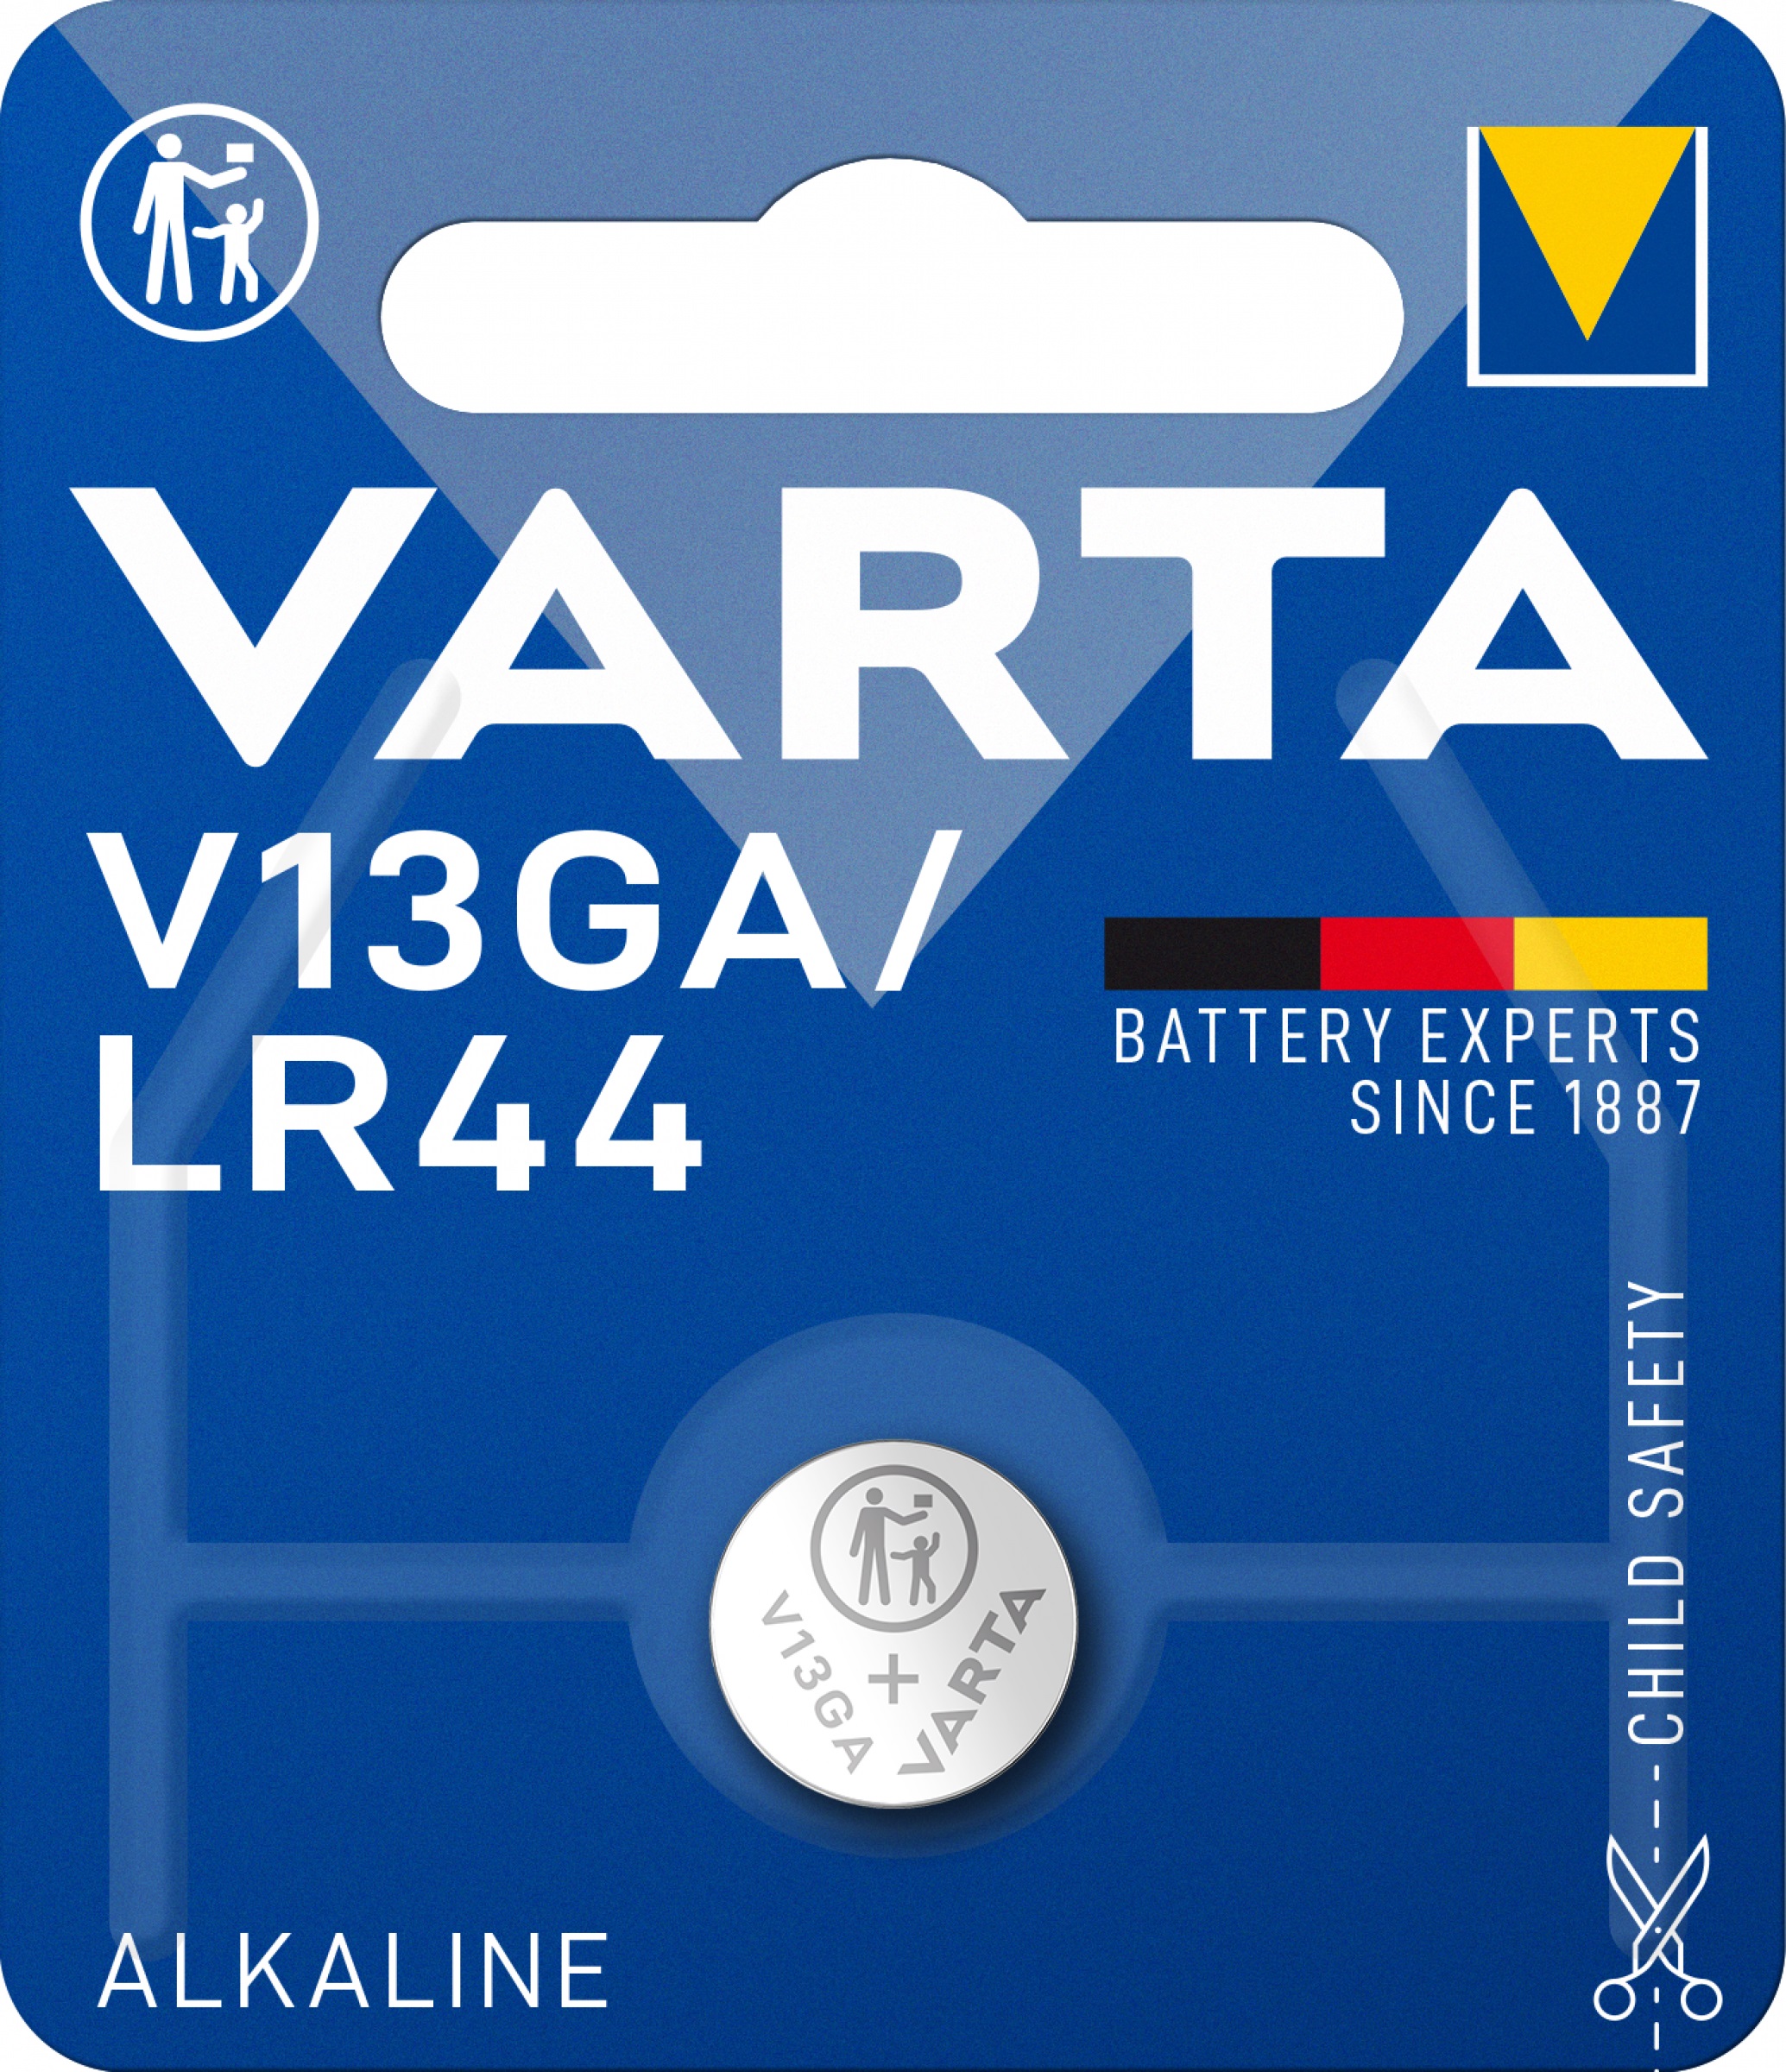 Varta V13GA Knopfzelle LR44 Batterie 1,5V 125 mAh